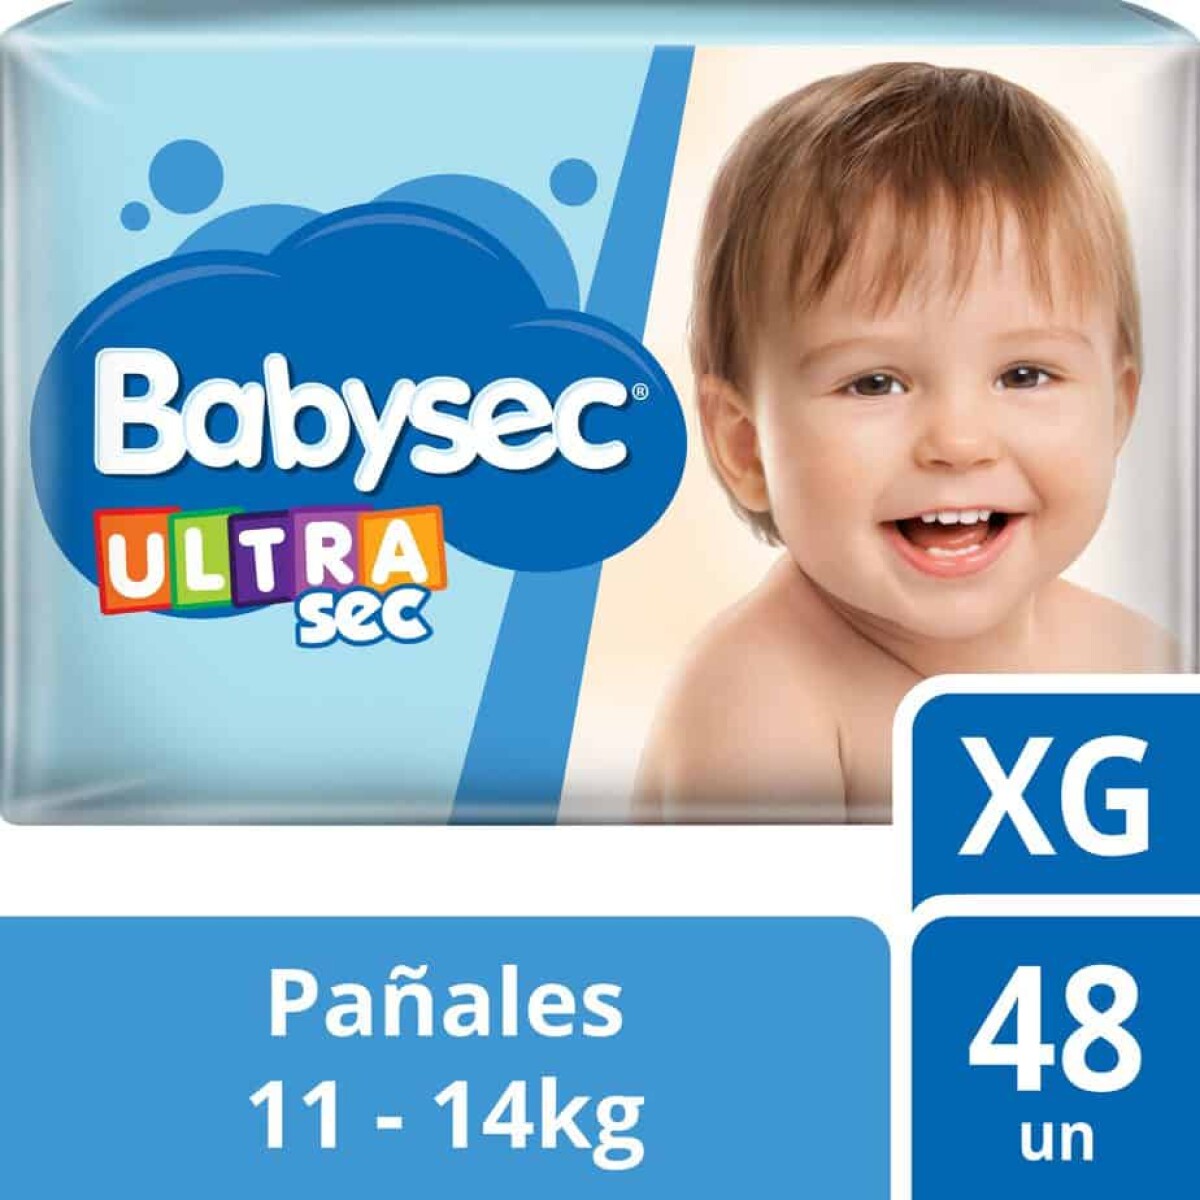 Pañales Babysec Ultrasec Xg X 48 